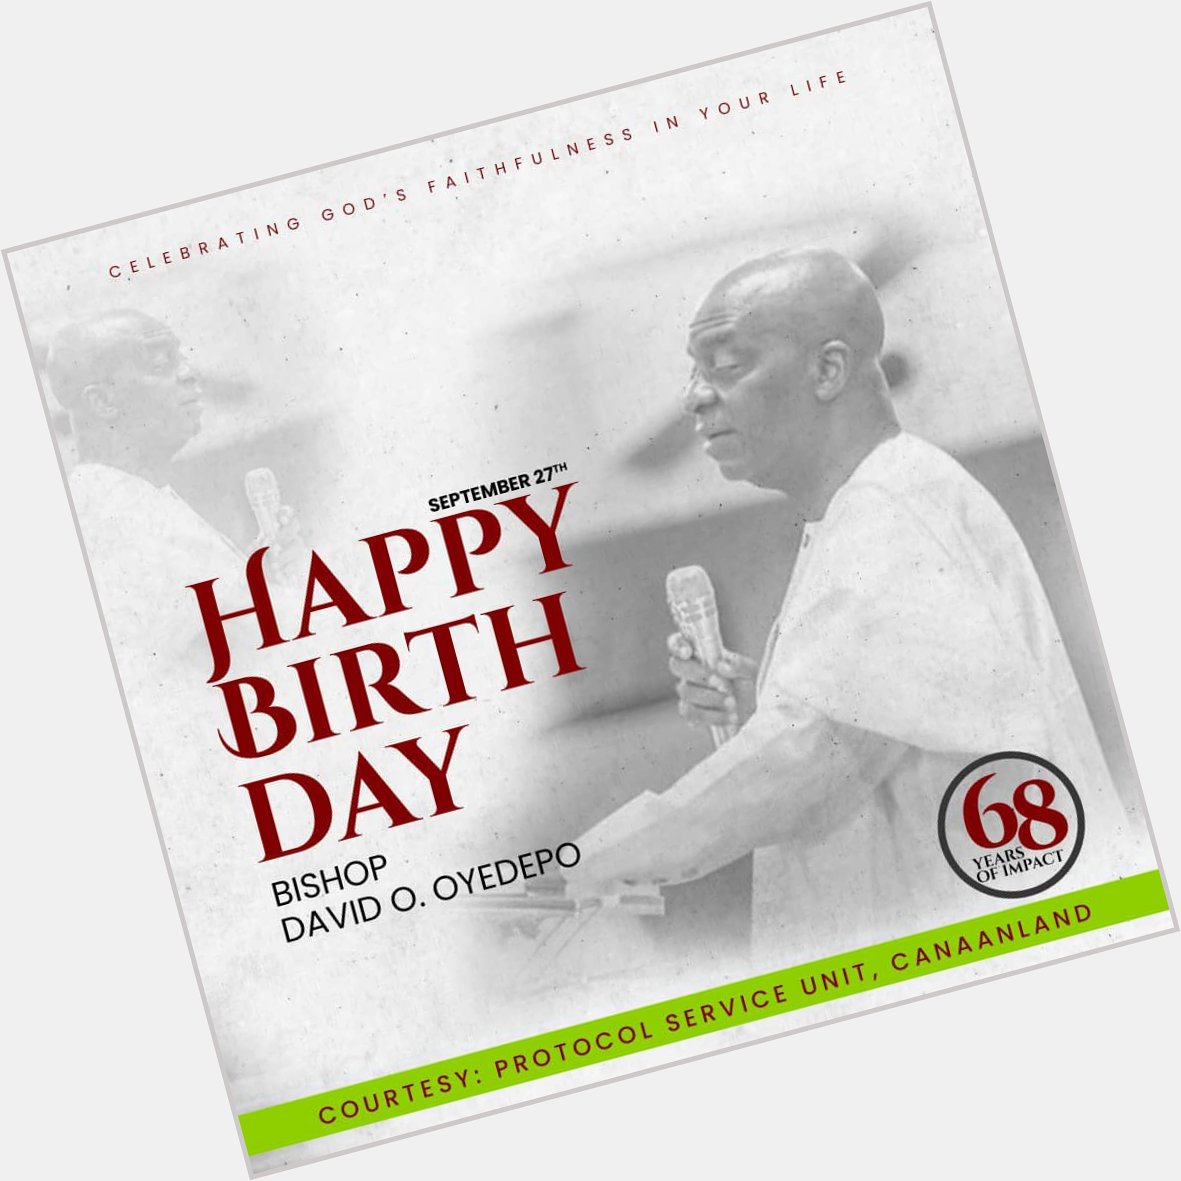 Happy birthday Bishop David Oyedepo 